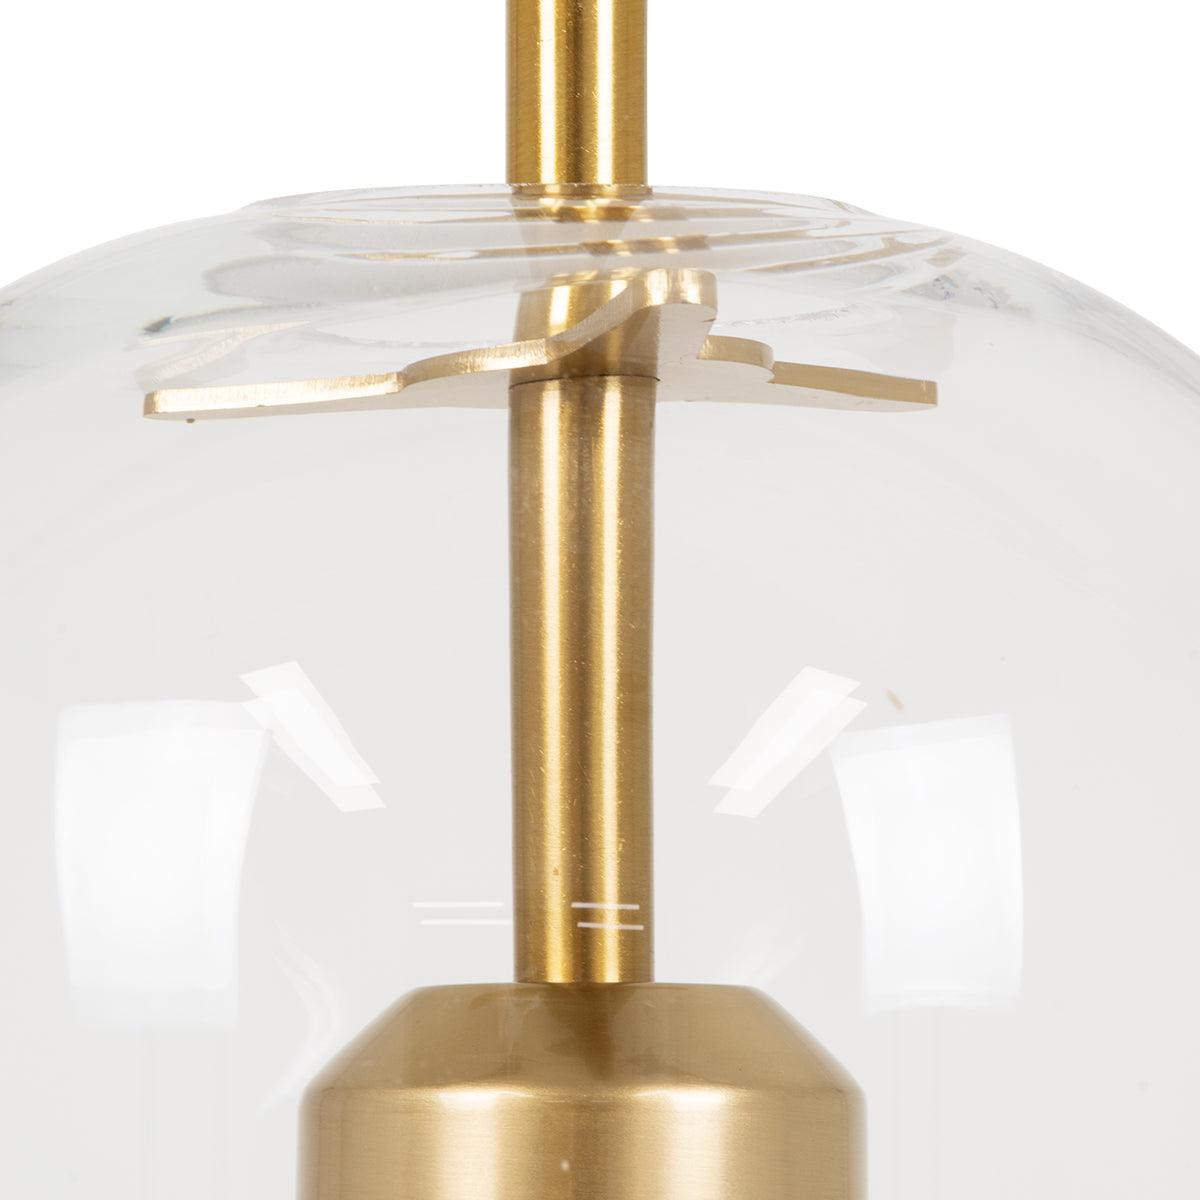 GloboStar® AVERY 00741 Μοντέρνο Κρεμαστό Φωτιστικό Οροφής Μονόφωτο Διάφανο Γυάλινο με Χρυσό Μεταλλικό Πλέγμα Φ15 x Υ60cm - ledmania.gr